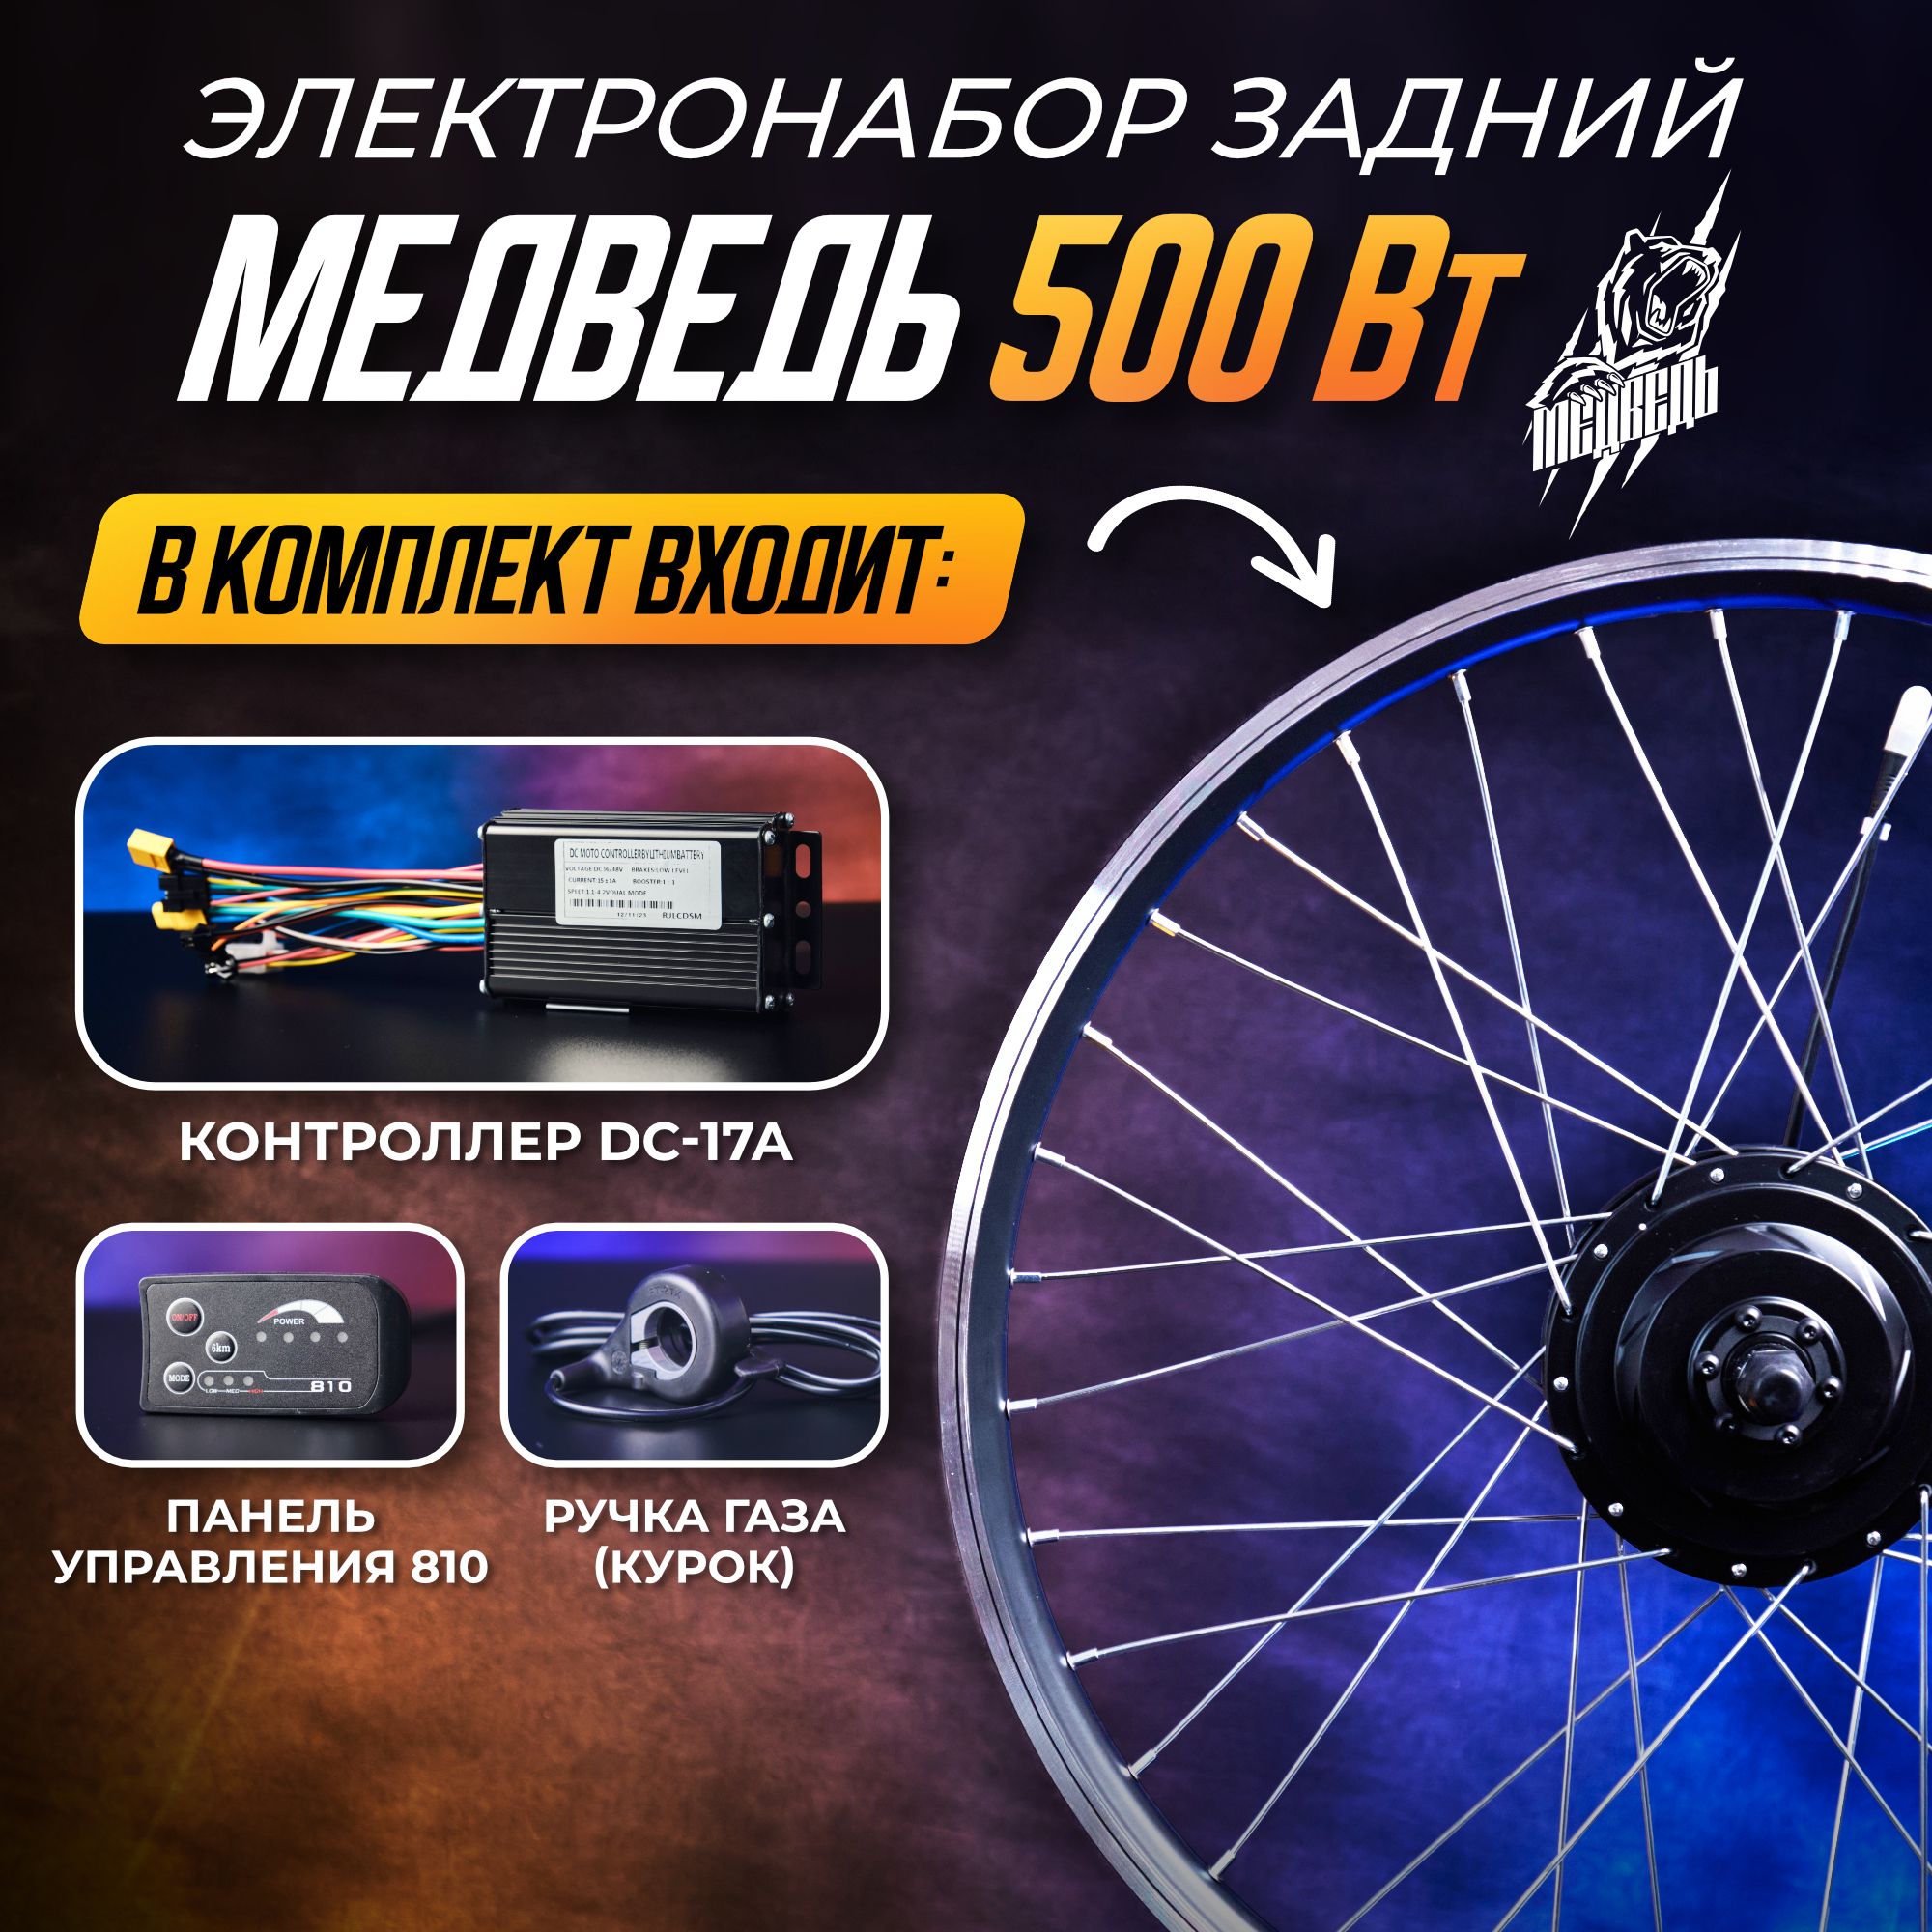 Мотор-колесоМедведь500Вт,задний24"+комплект4элемента